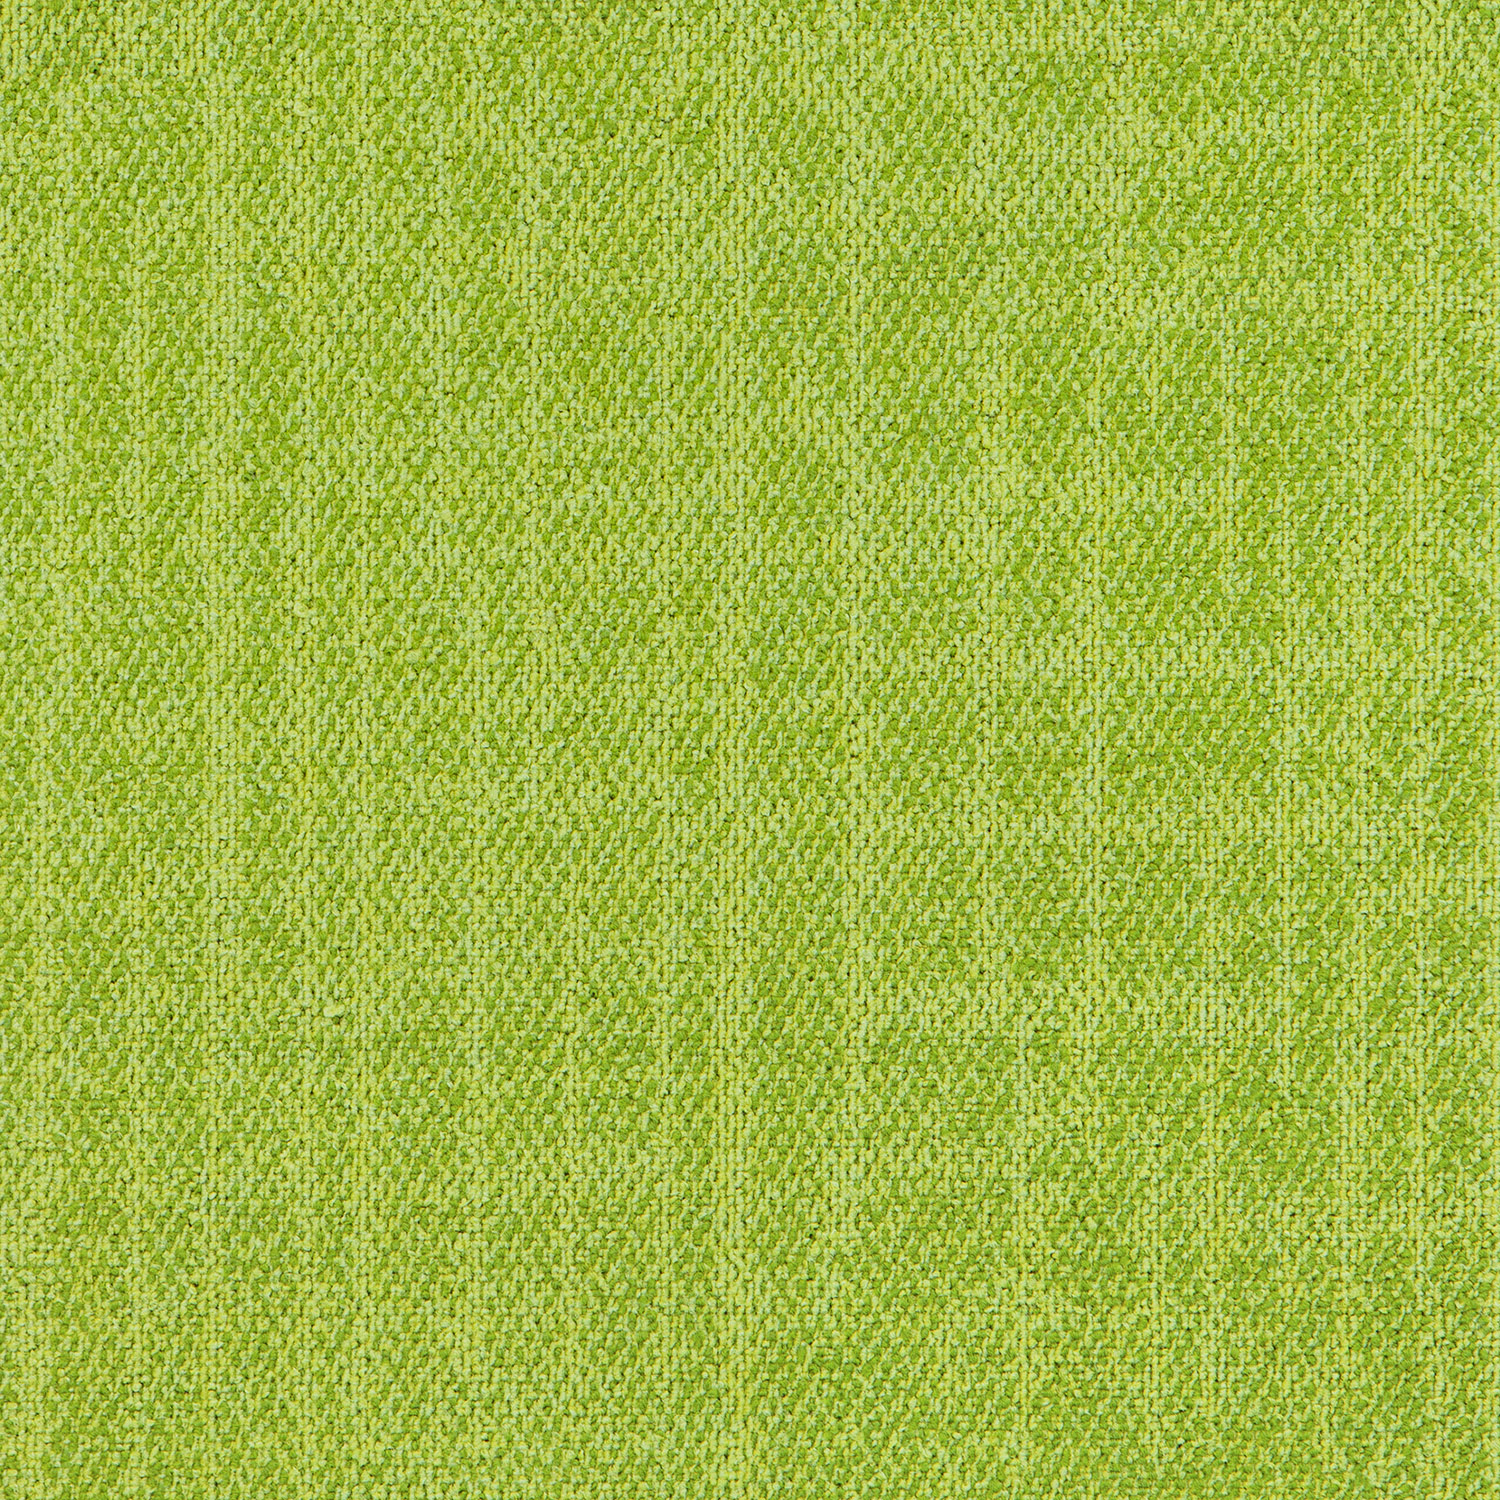 LAGOM226 Nylon Modern Square Carpet Tiles Factory